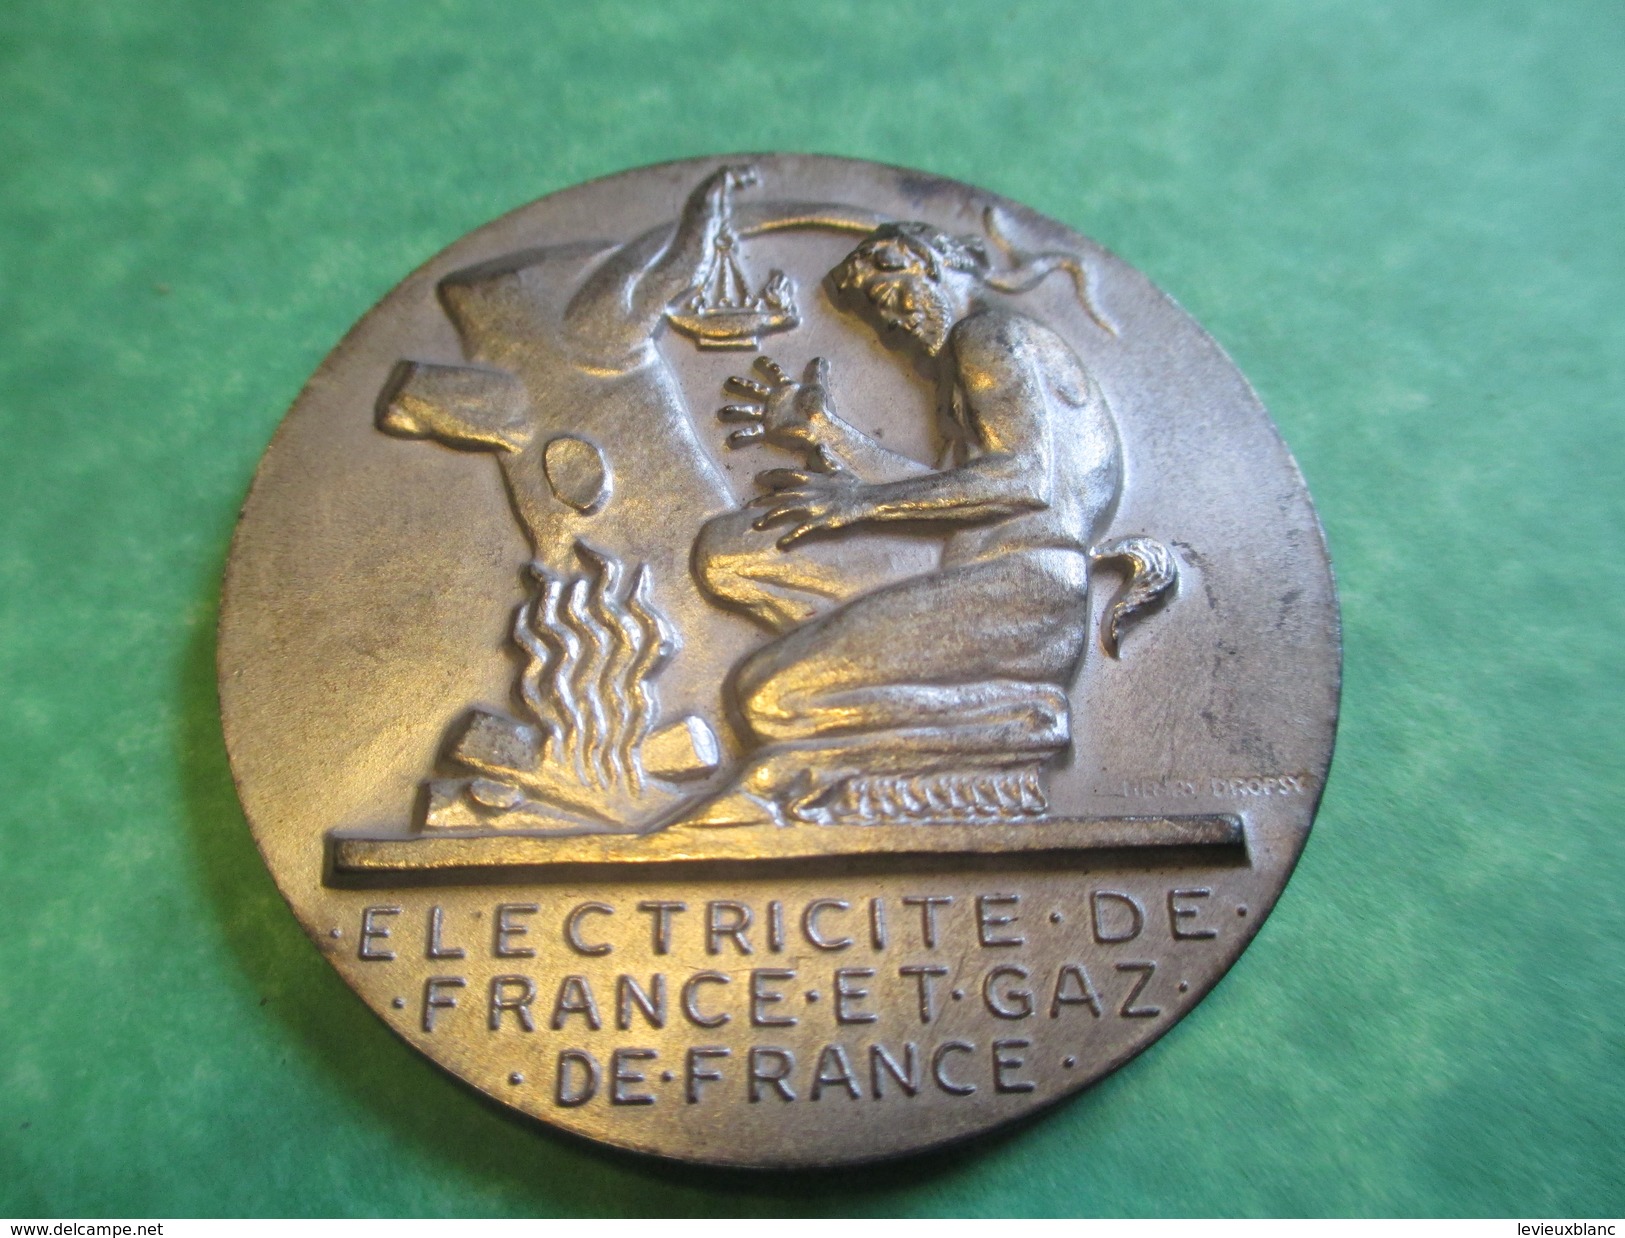 Médaille D'Ancienneté/ Entreprise/ Electricité De France Et Gaz De France/25 Années De Service/CARON/Modéle1961   MED103 - Professionals / Firms